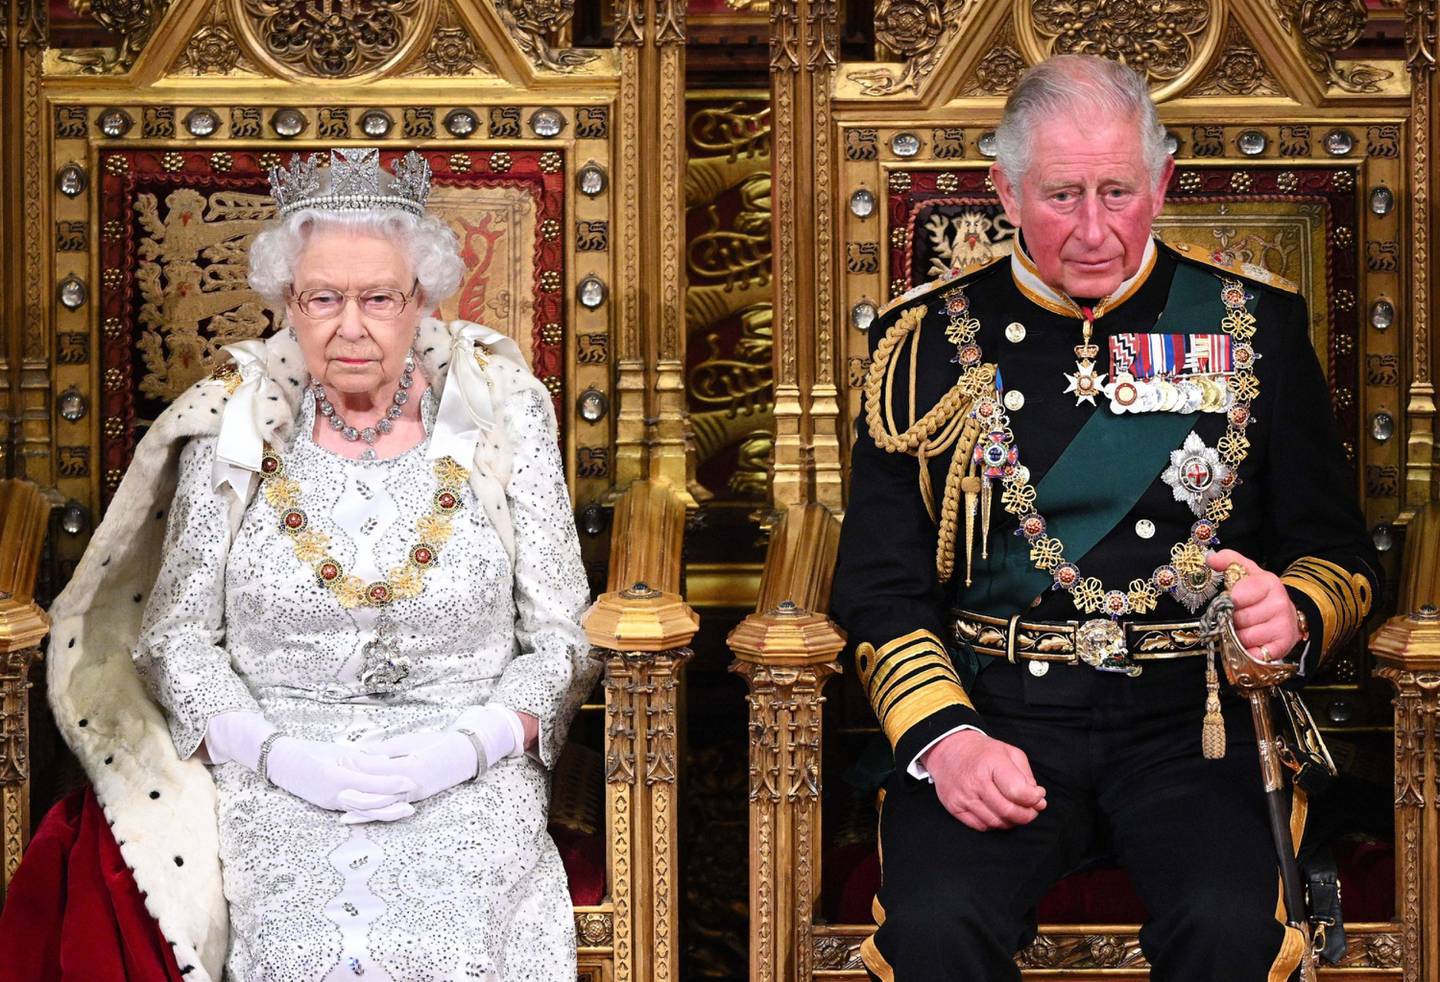 La reina celebró este fin de semana los 70 años en el trono. Foto de Paul Edwards - WPA Pool/Getty Images